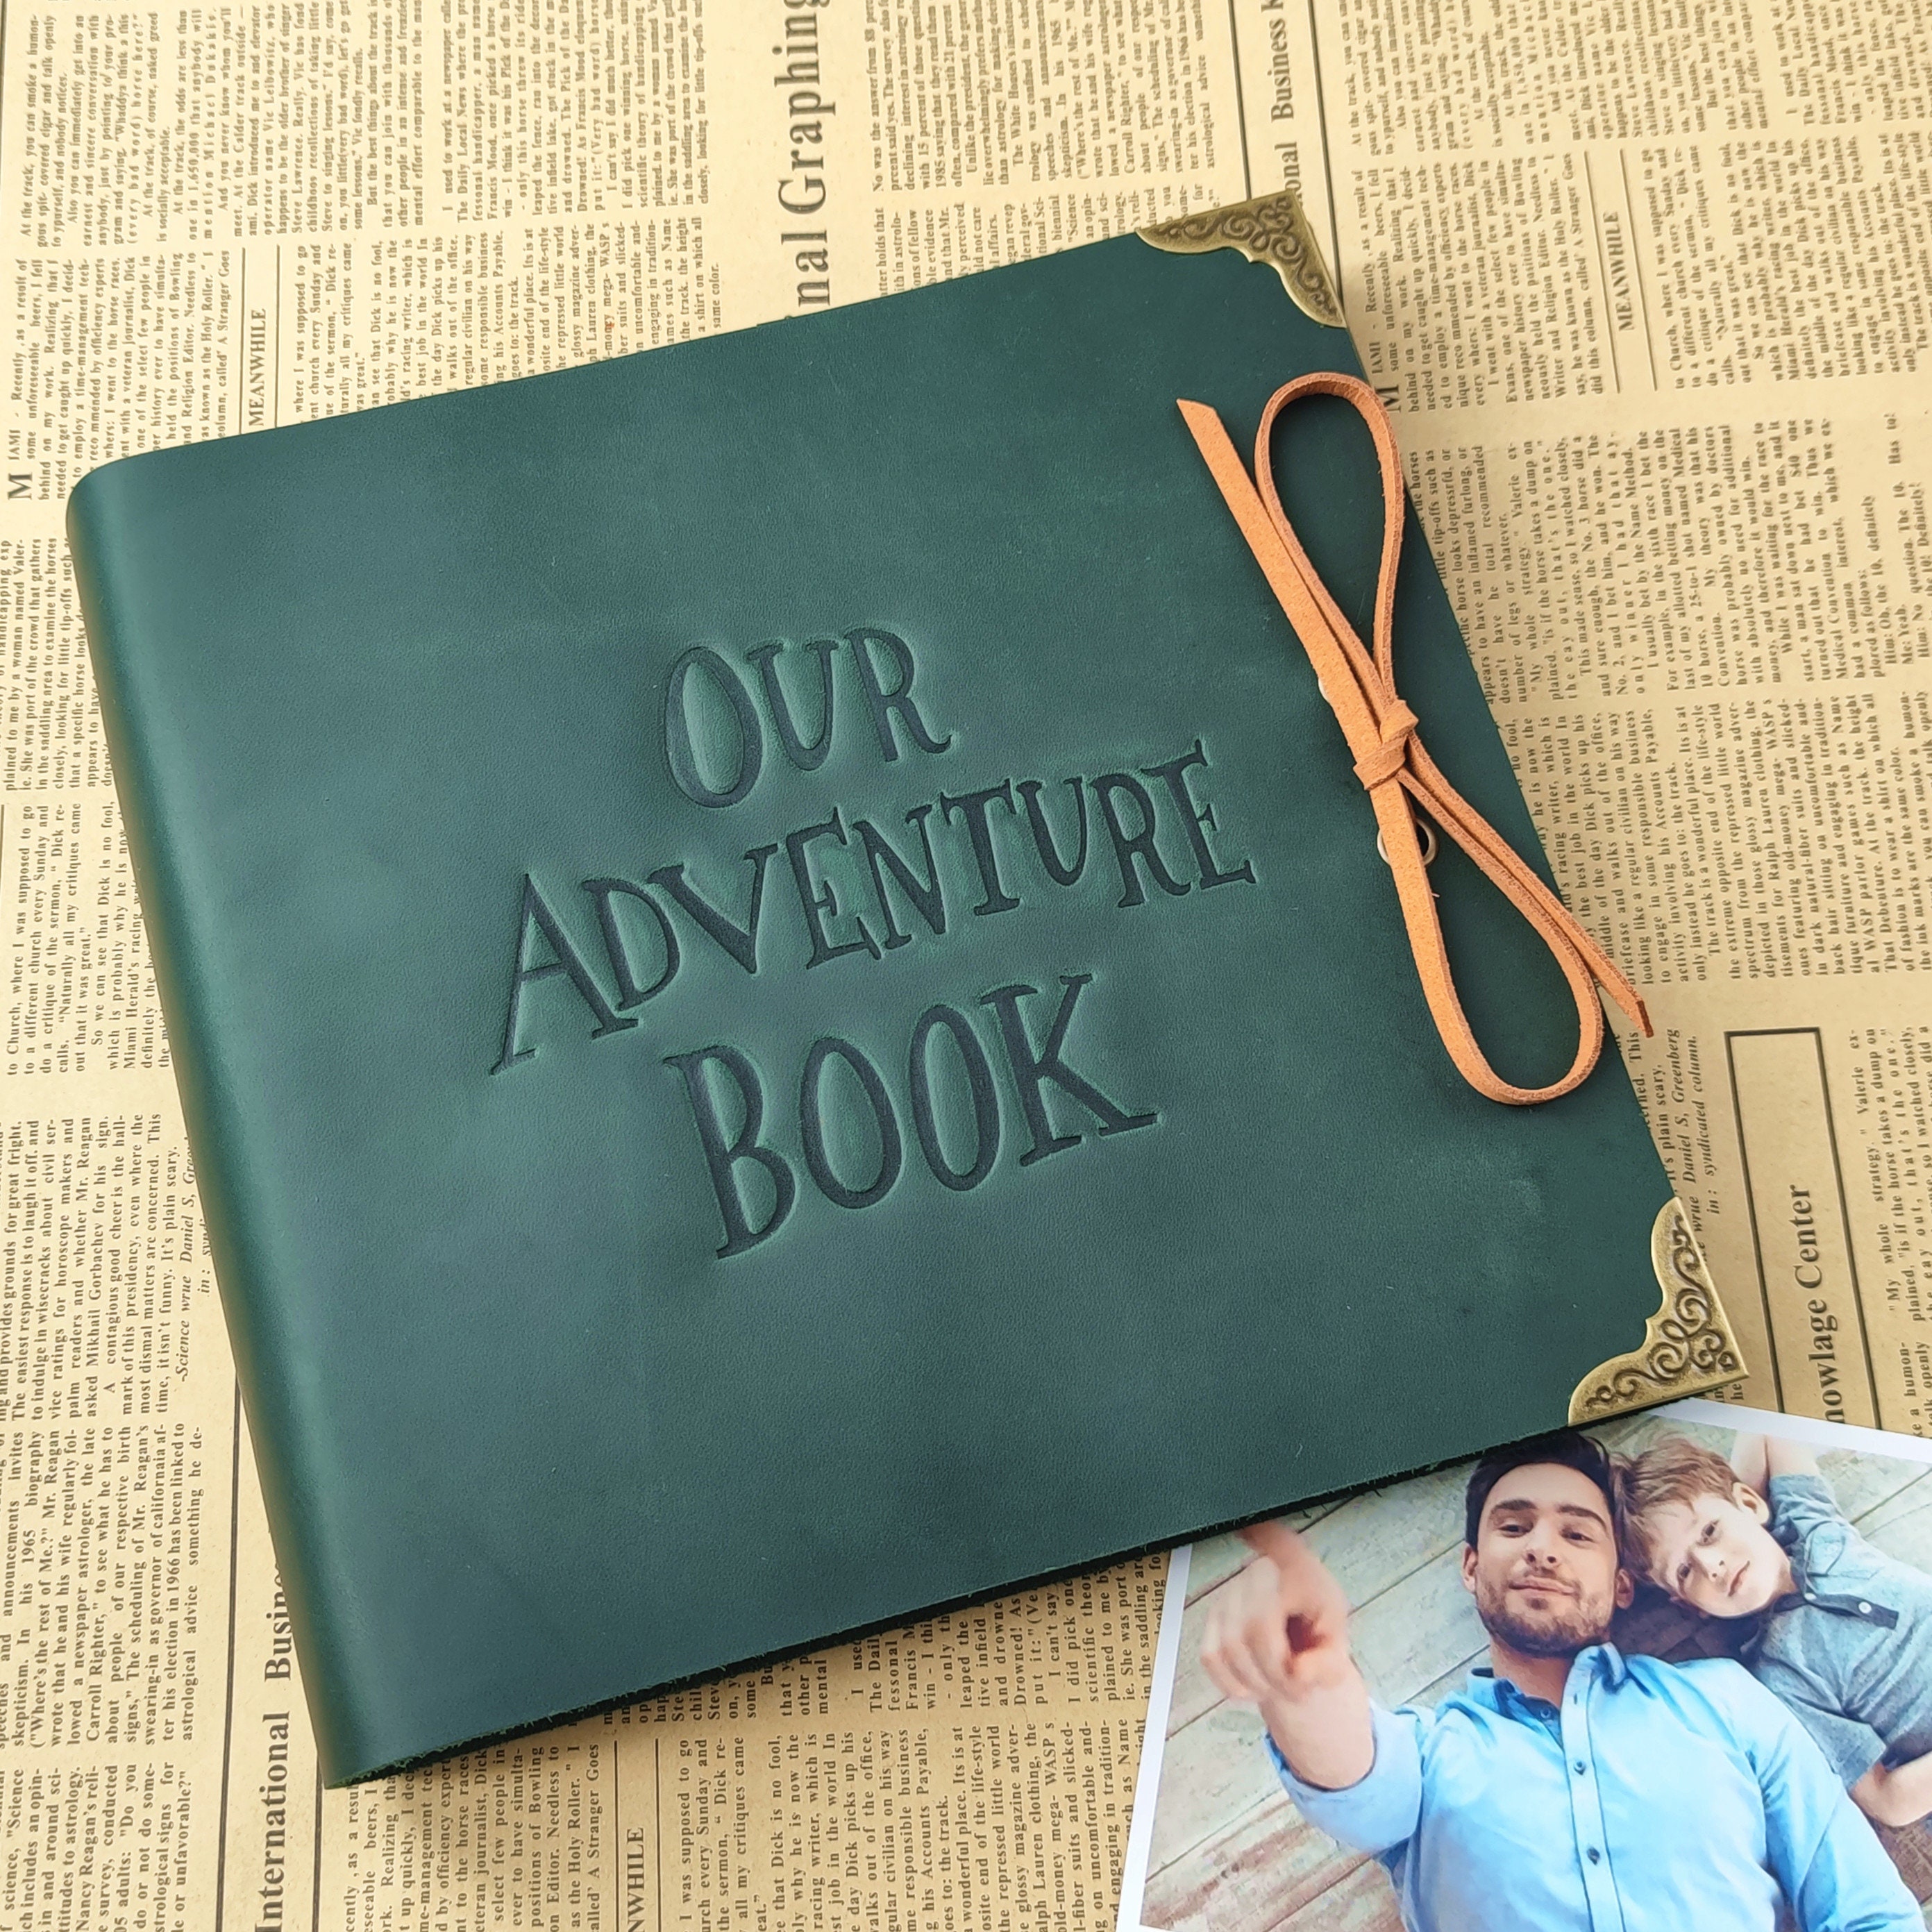 Willstar DIY Handmade Our Adventure Book Photo Album Scrapbook Album + Set  Album Accessories, Retro Album, Wedding Photo Album, Anniversary 